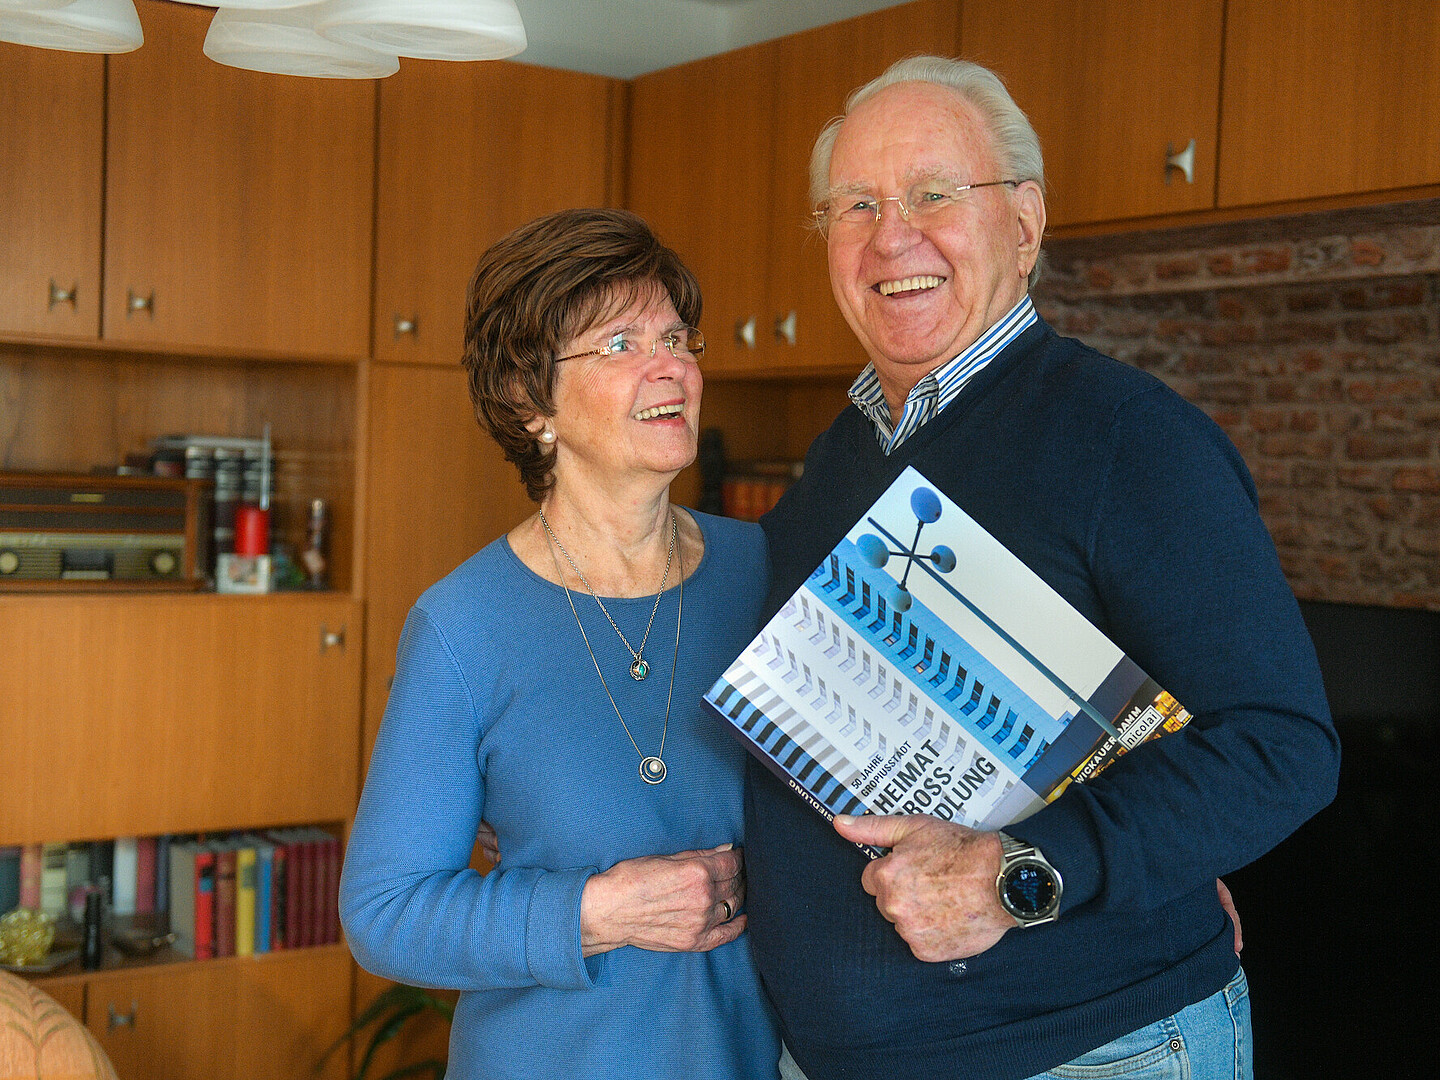 Bärbel und Udo Schulte in ihrem Wohnzimmer, Udo Schulte hält einen Bildband anlässlich des 50. Jubiläums der Gropiusstadt in der Hand.